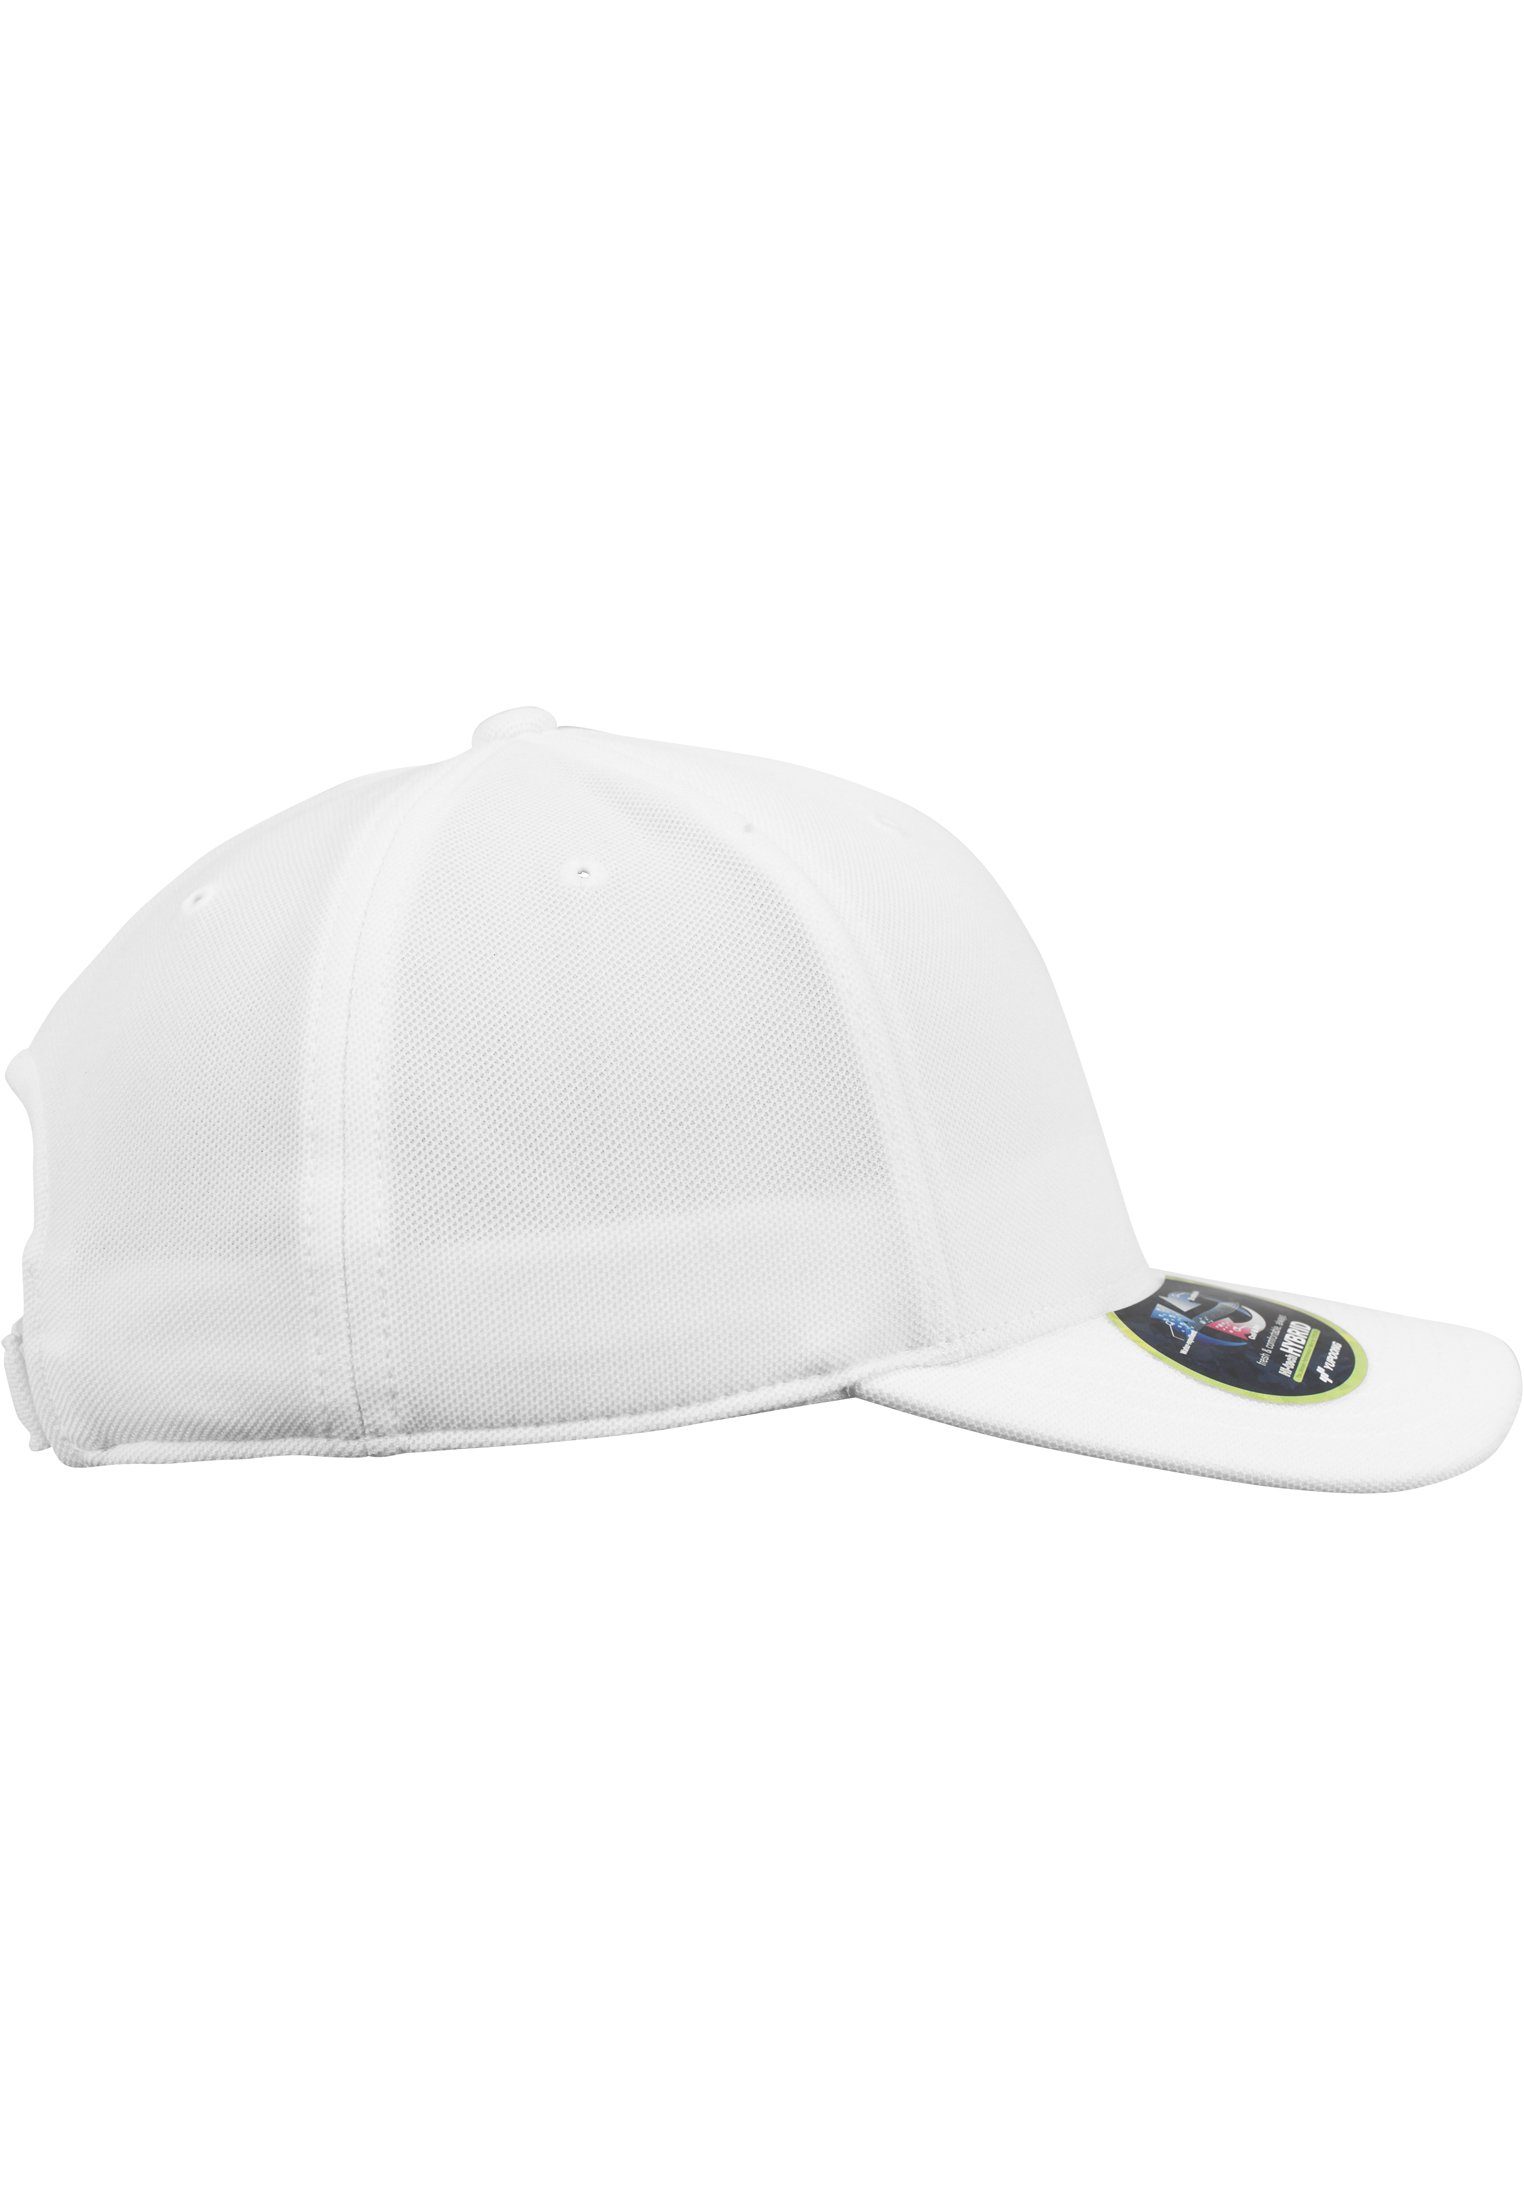 Flexfit Flex Cap Mini Pique 110 white & Accessoires Dry Cool